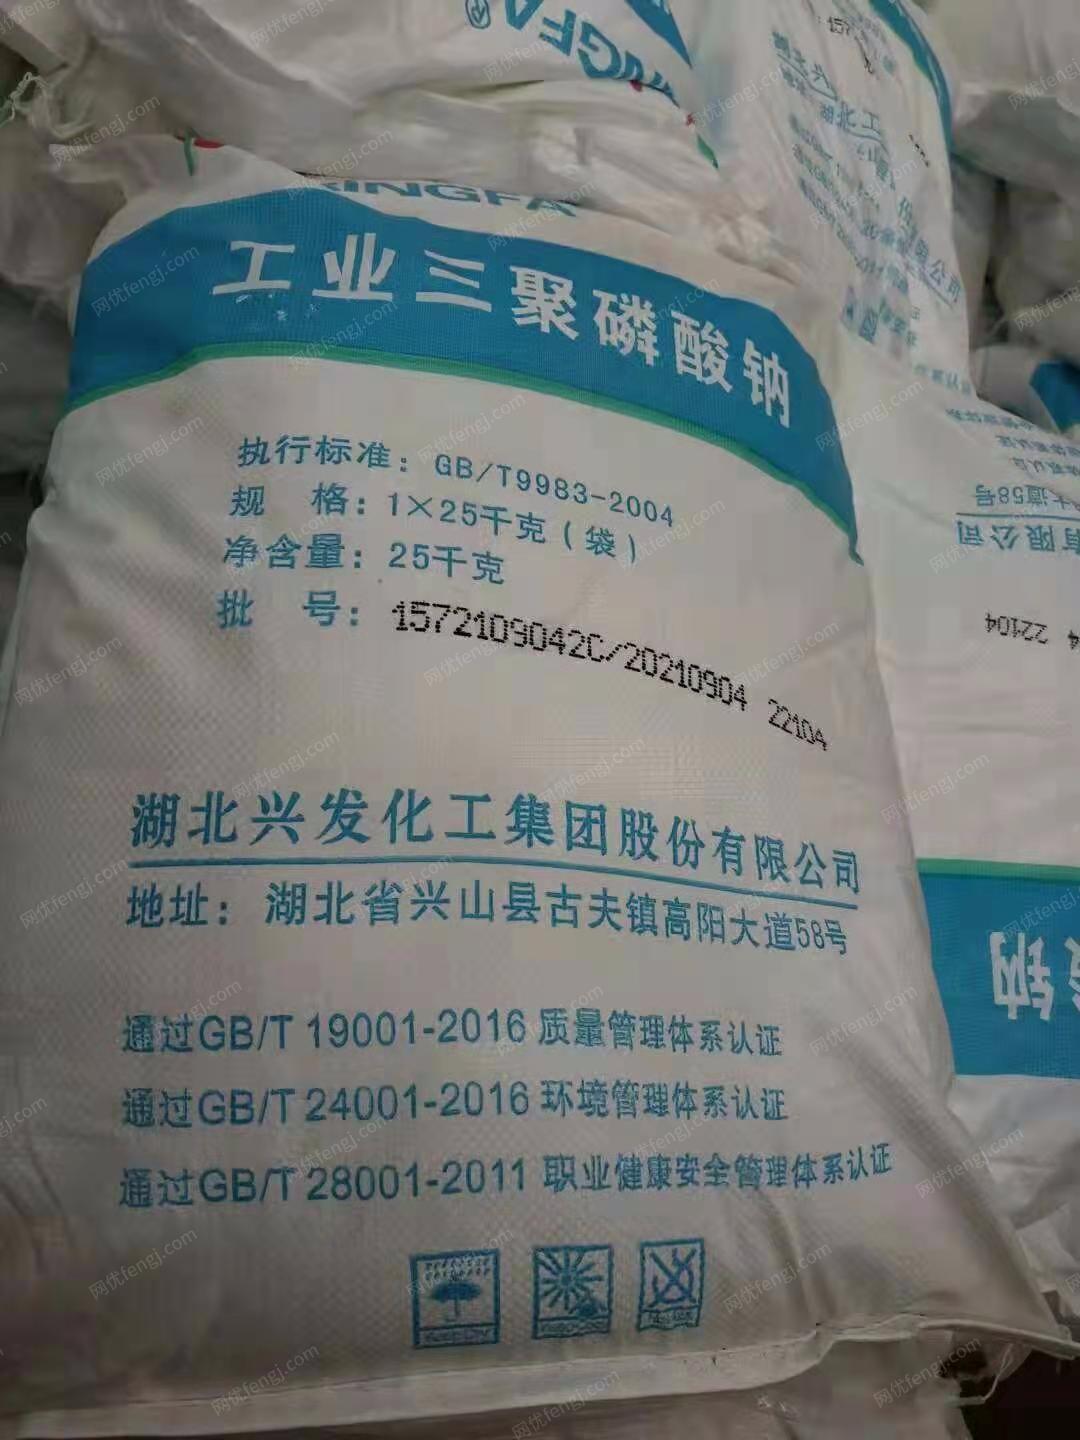 河南郑州低价处置工业三聚磷酸钠20吨